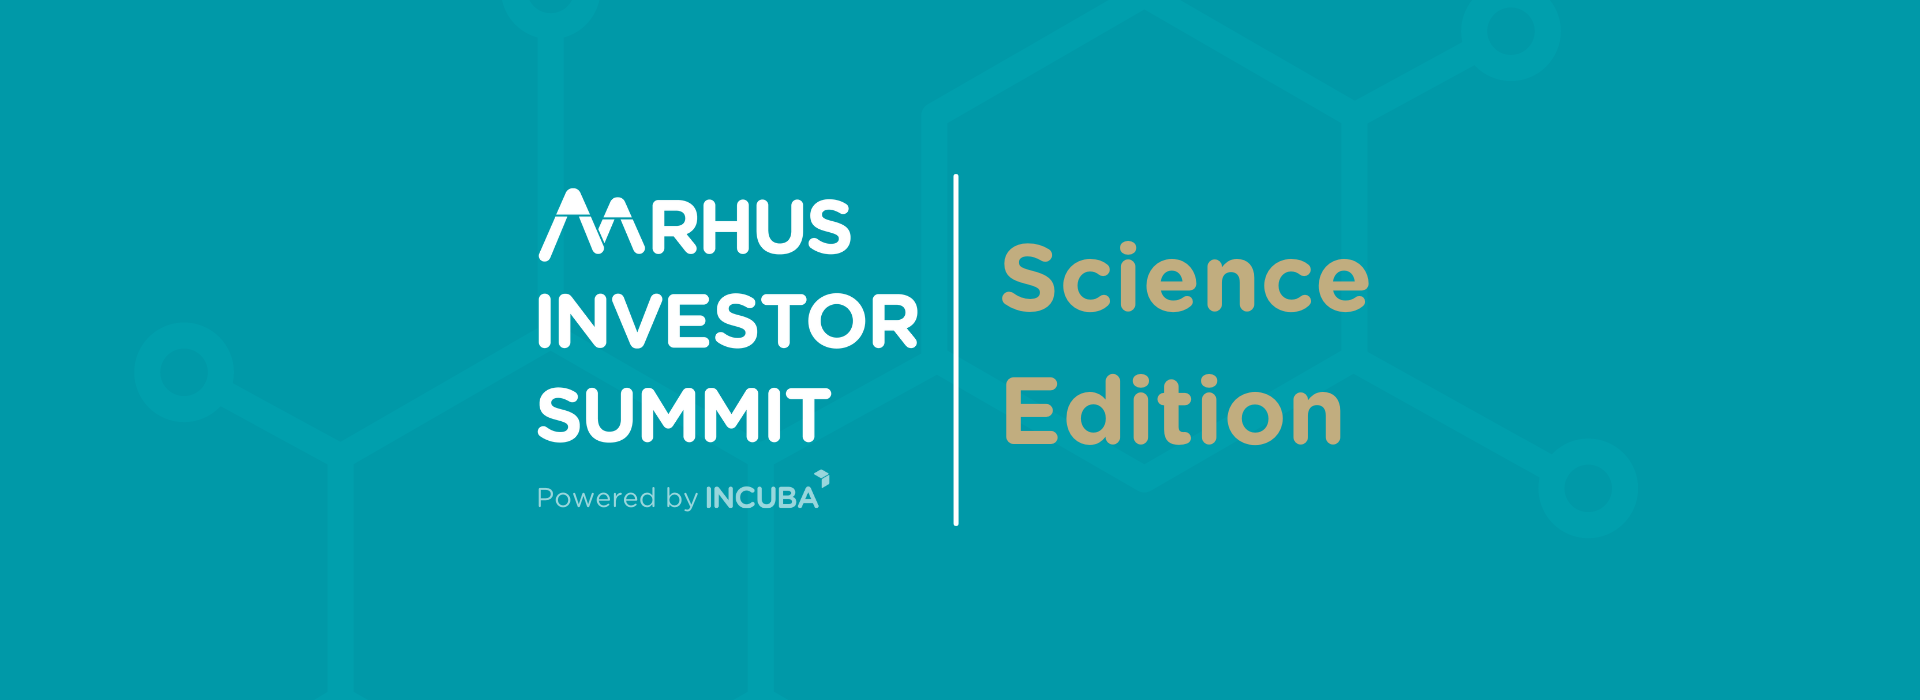 Aarhus Investor Summit 2023